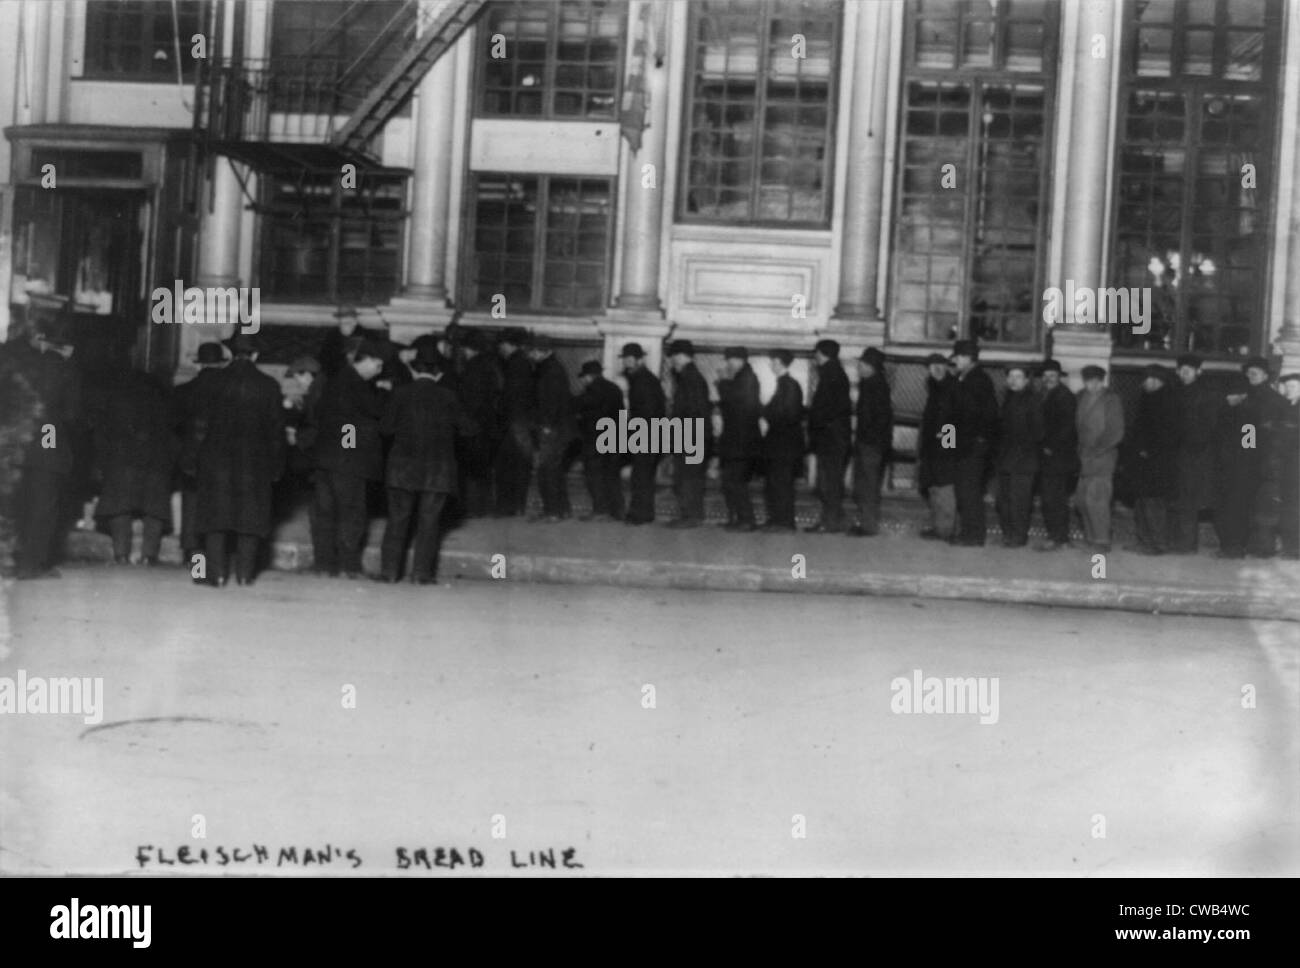 New York City, der Bowery Bowery Männer warten auf Fleischmans Brotlinie, Foto, Dezember 1913. Stockfoto